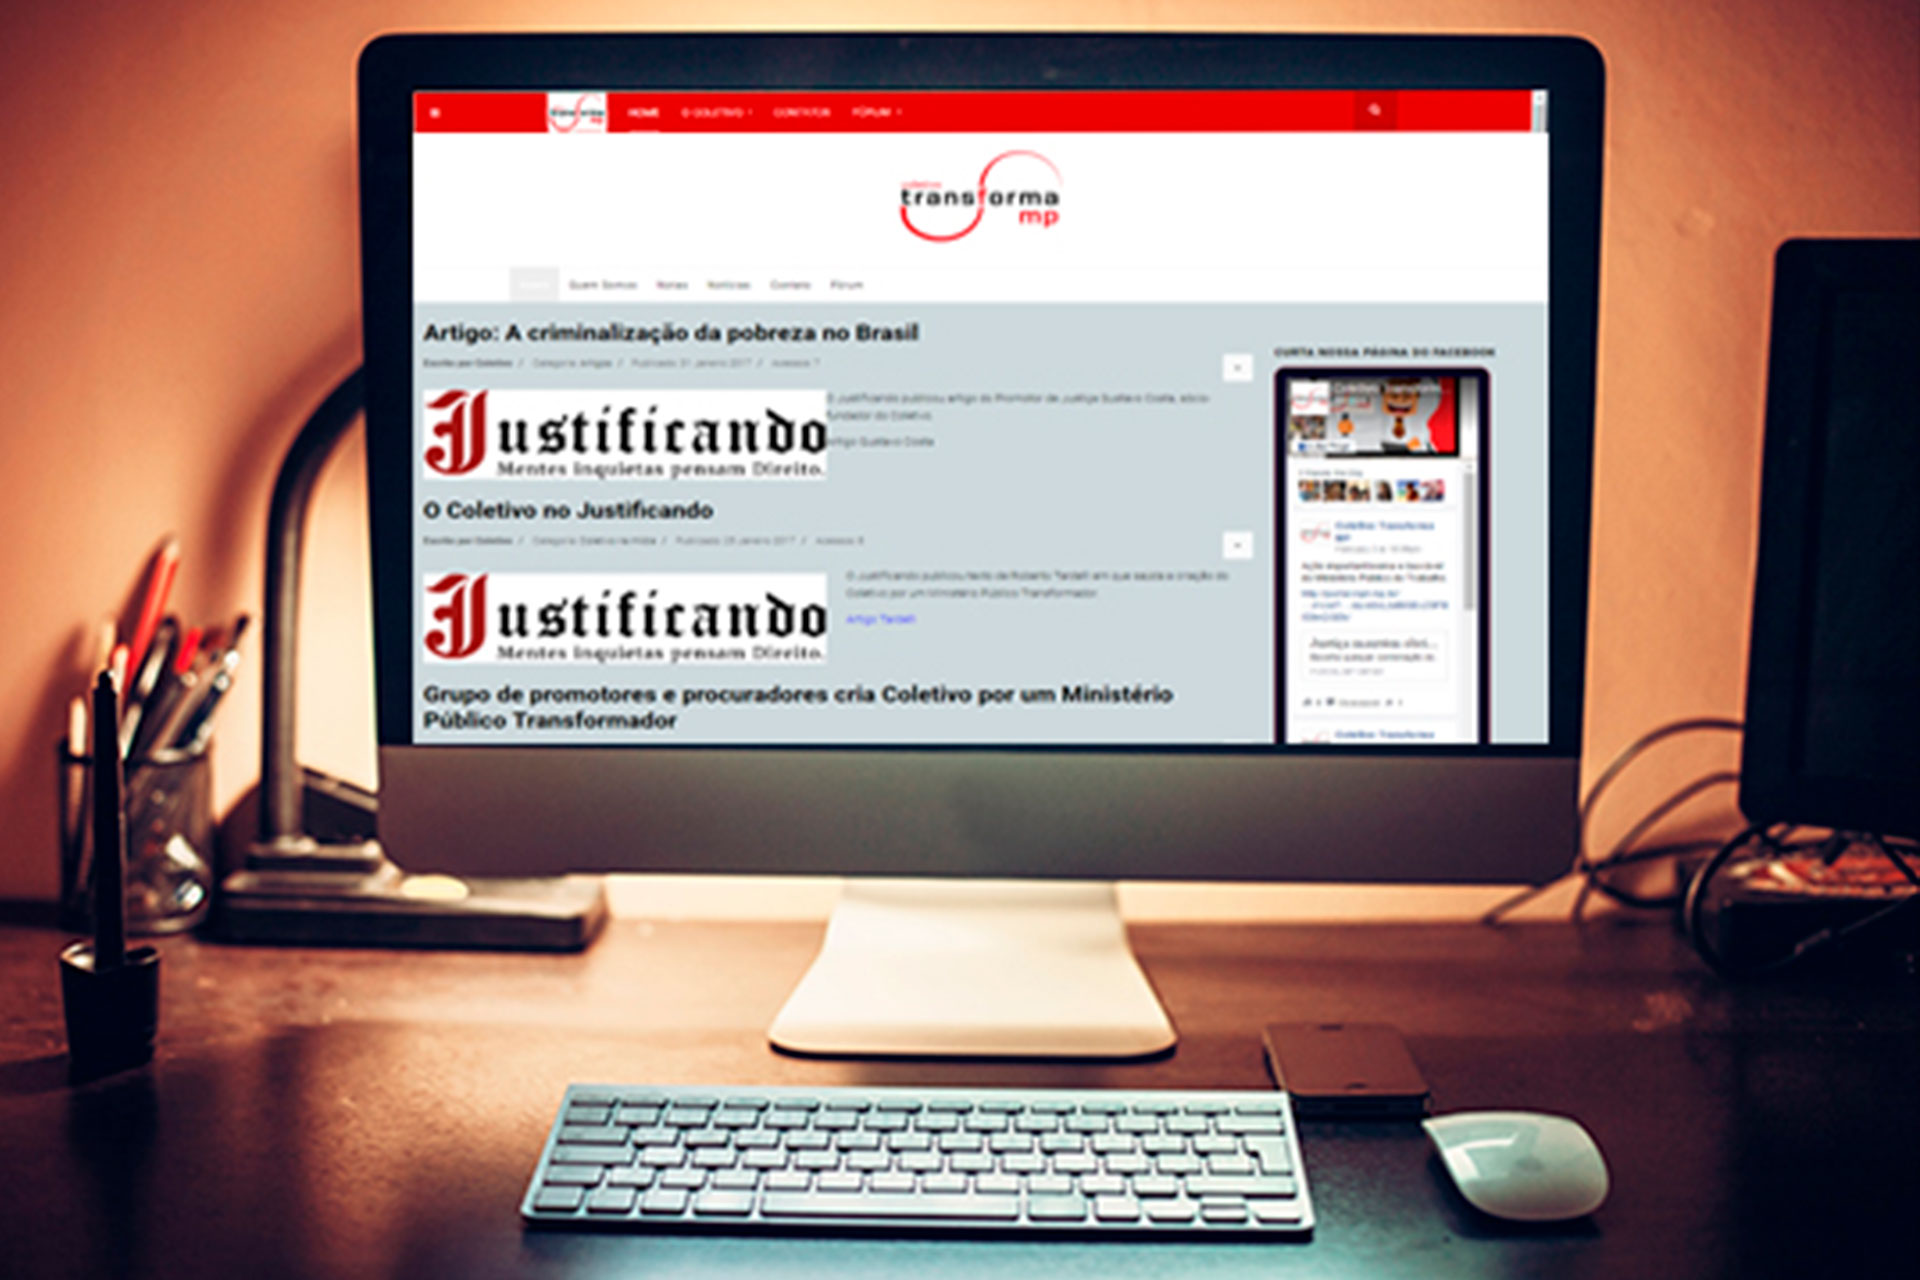 Site transformamp.com abre espaço para discussões sobre o papel do Ministério Público brasileiro